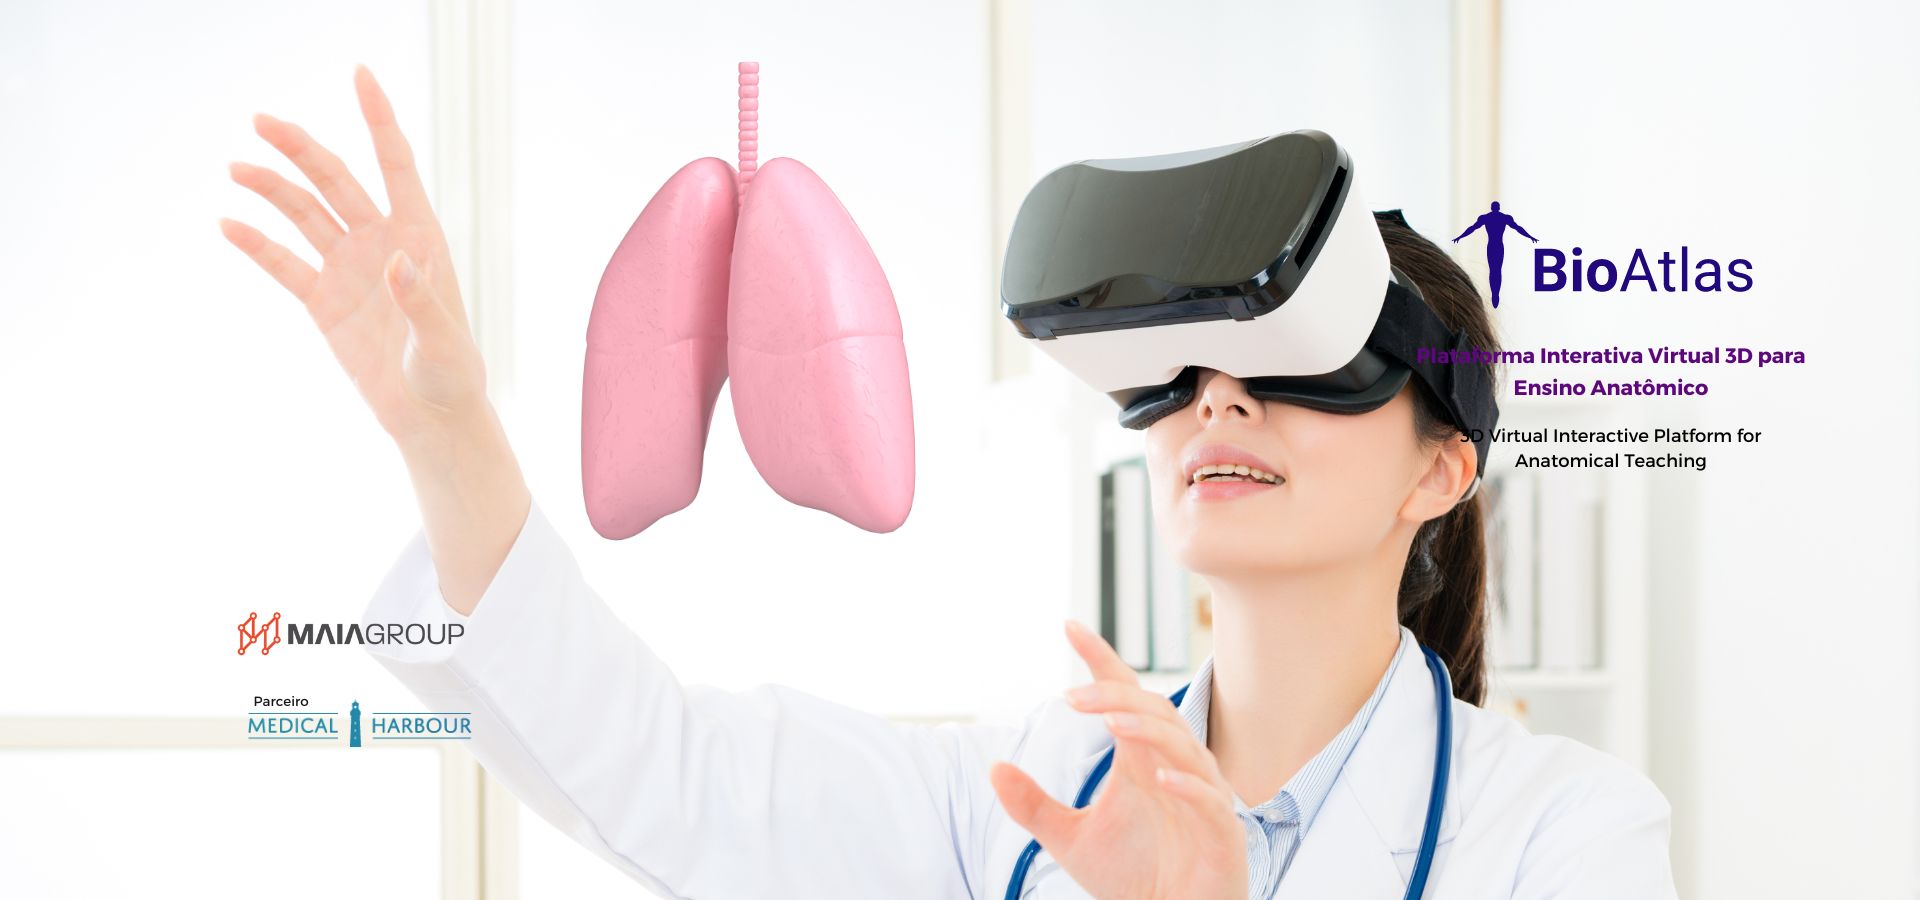 Ensino anatomico com Realidade virtual